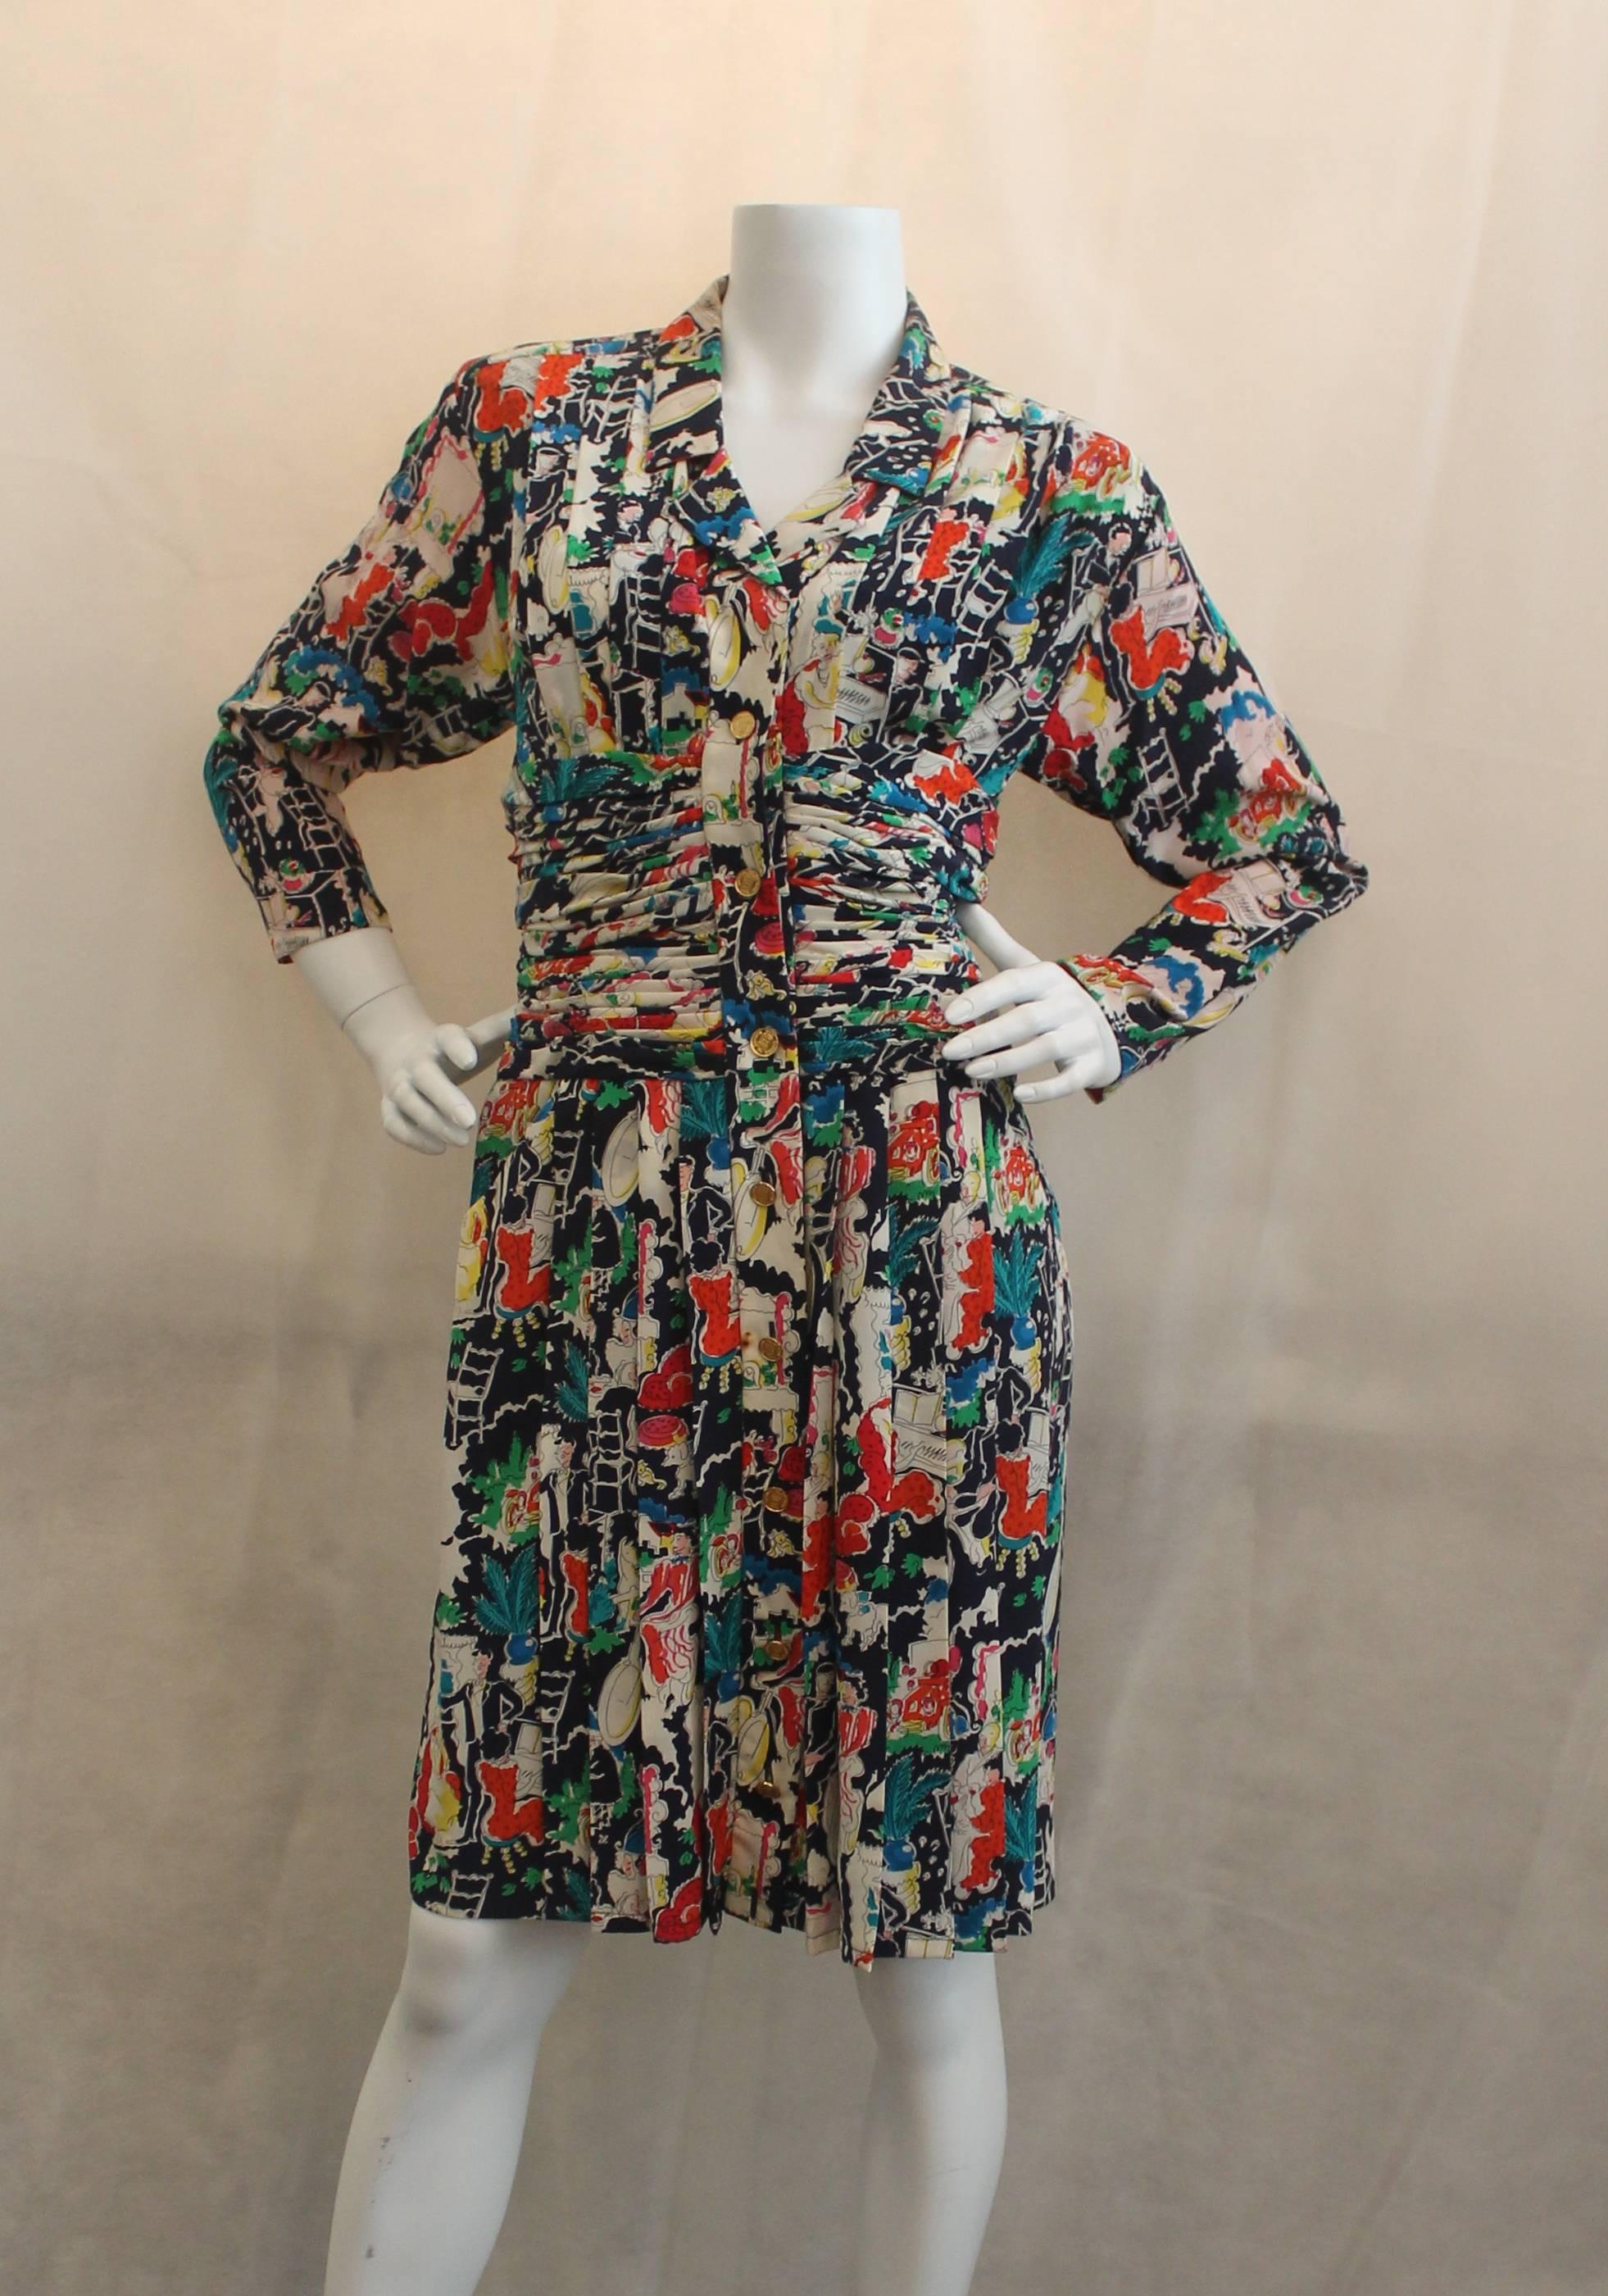 Ensemble robe et manteau en soie imprimée multicolore Chanel - 42 - circa 1980's. Cet ensemble est en bon état vintage, le principal problème étant quelques petites taches sur la robe  et quelques unes sur la jaquette qui ne sont pas visibles à